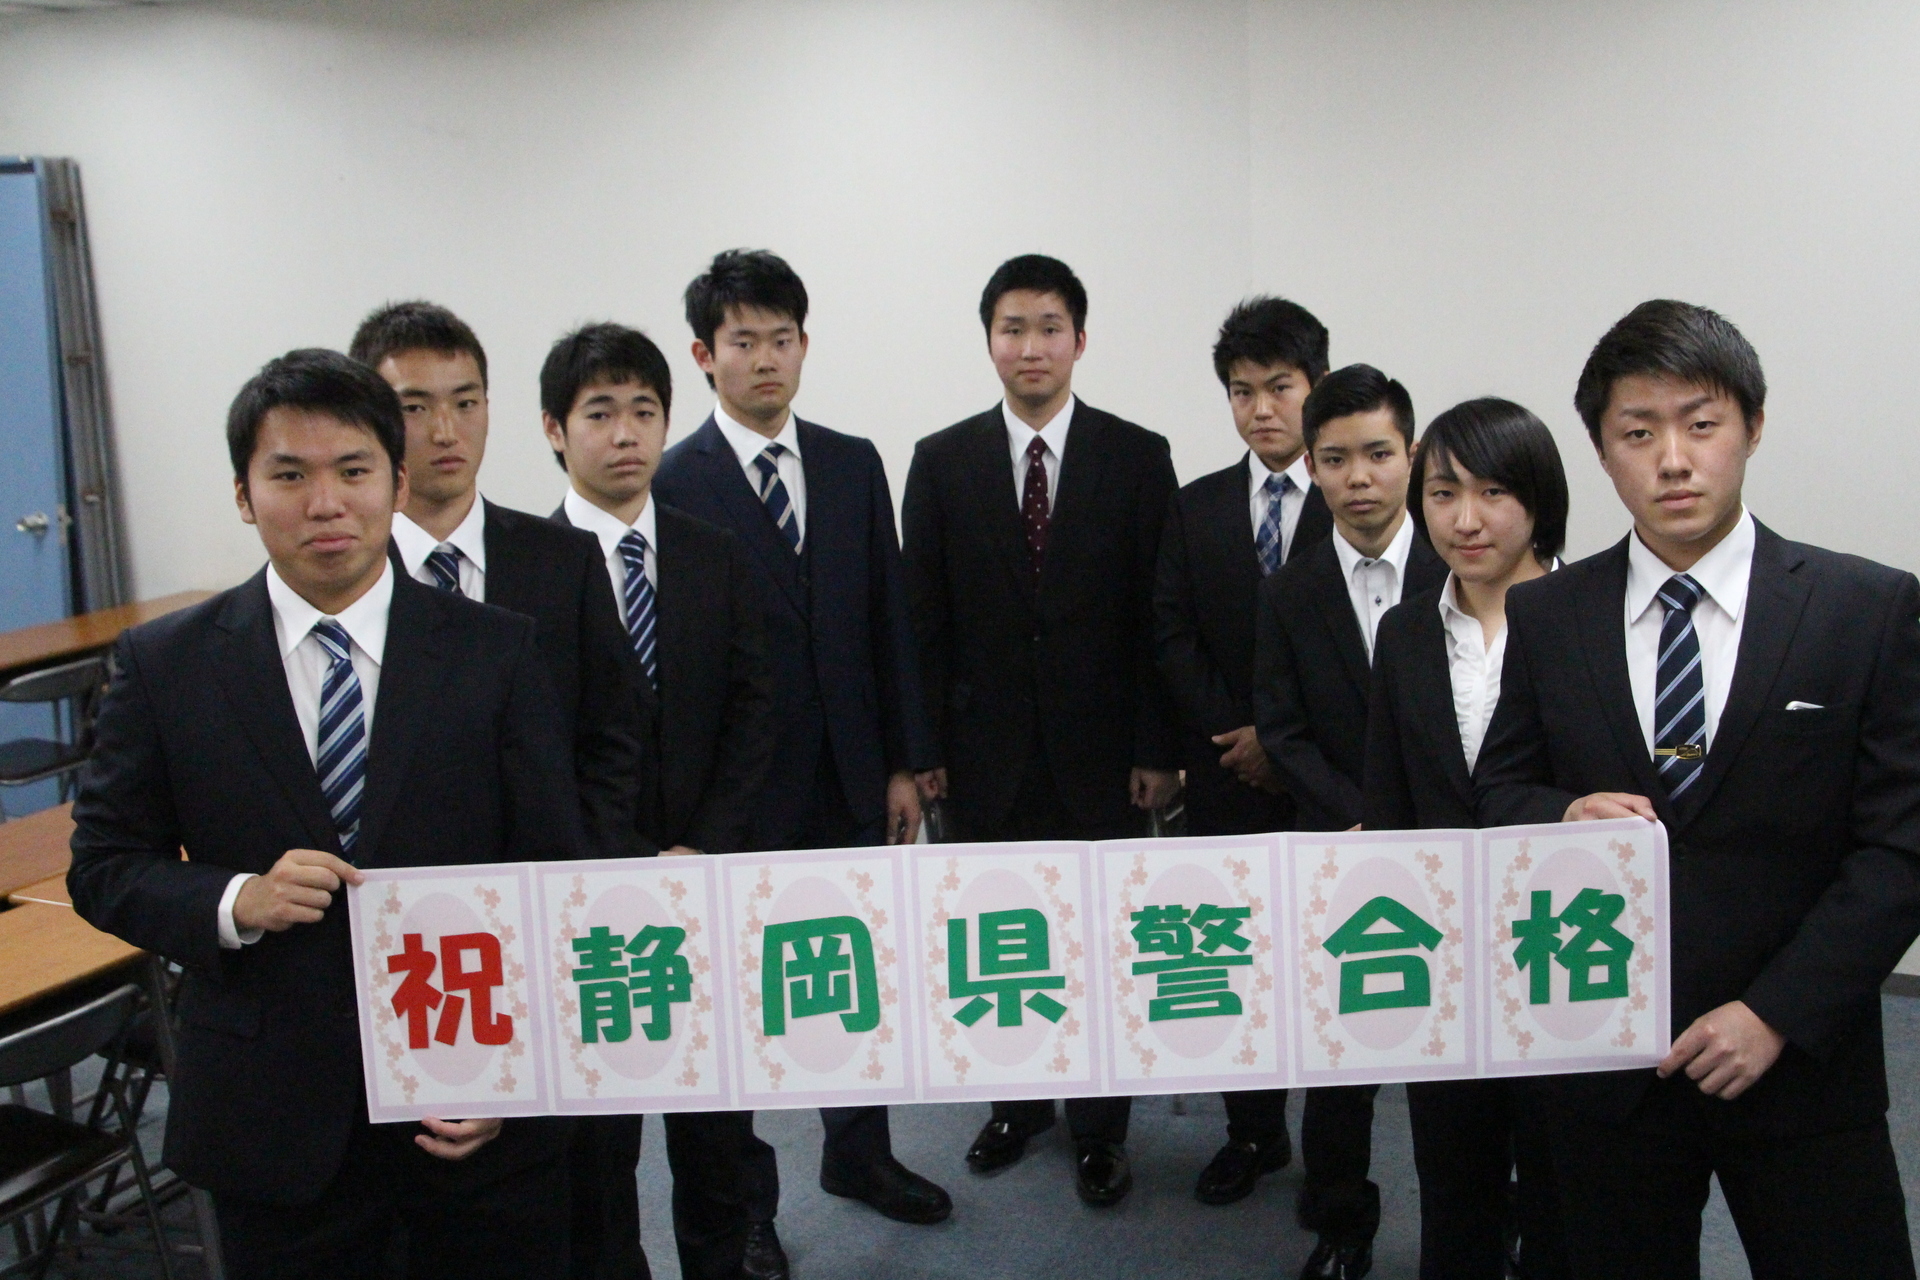 16年度初級合格祝賀会おめでとう 東京アカデミー静岡校 公務員 教員 各種国家試験対策 のブログ